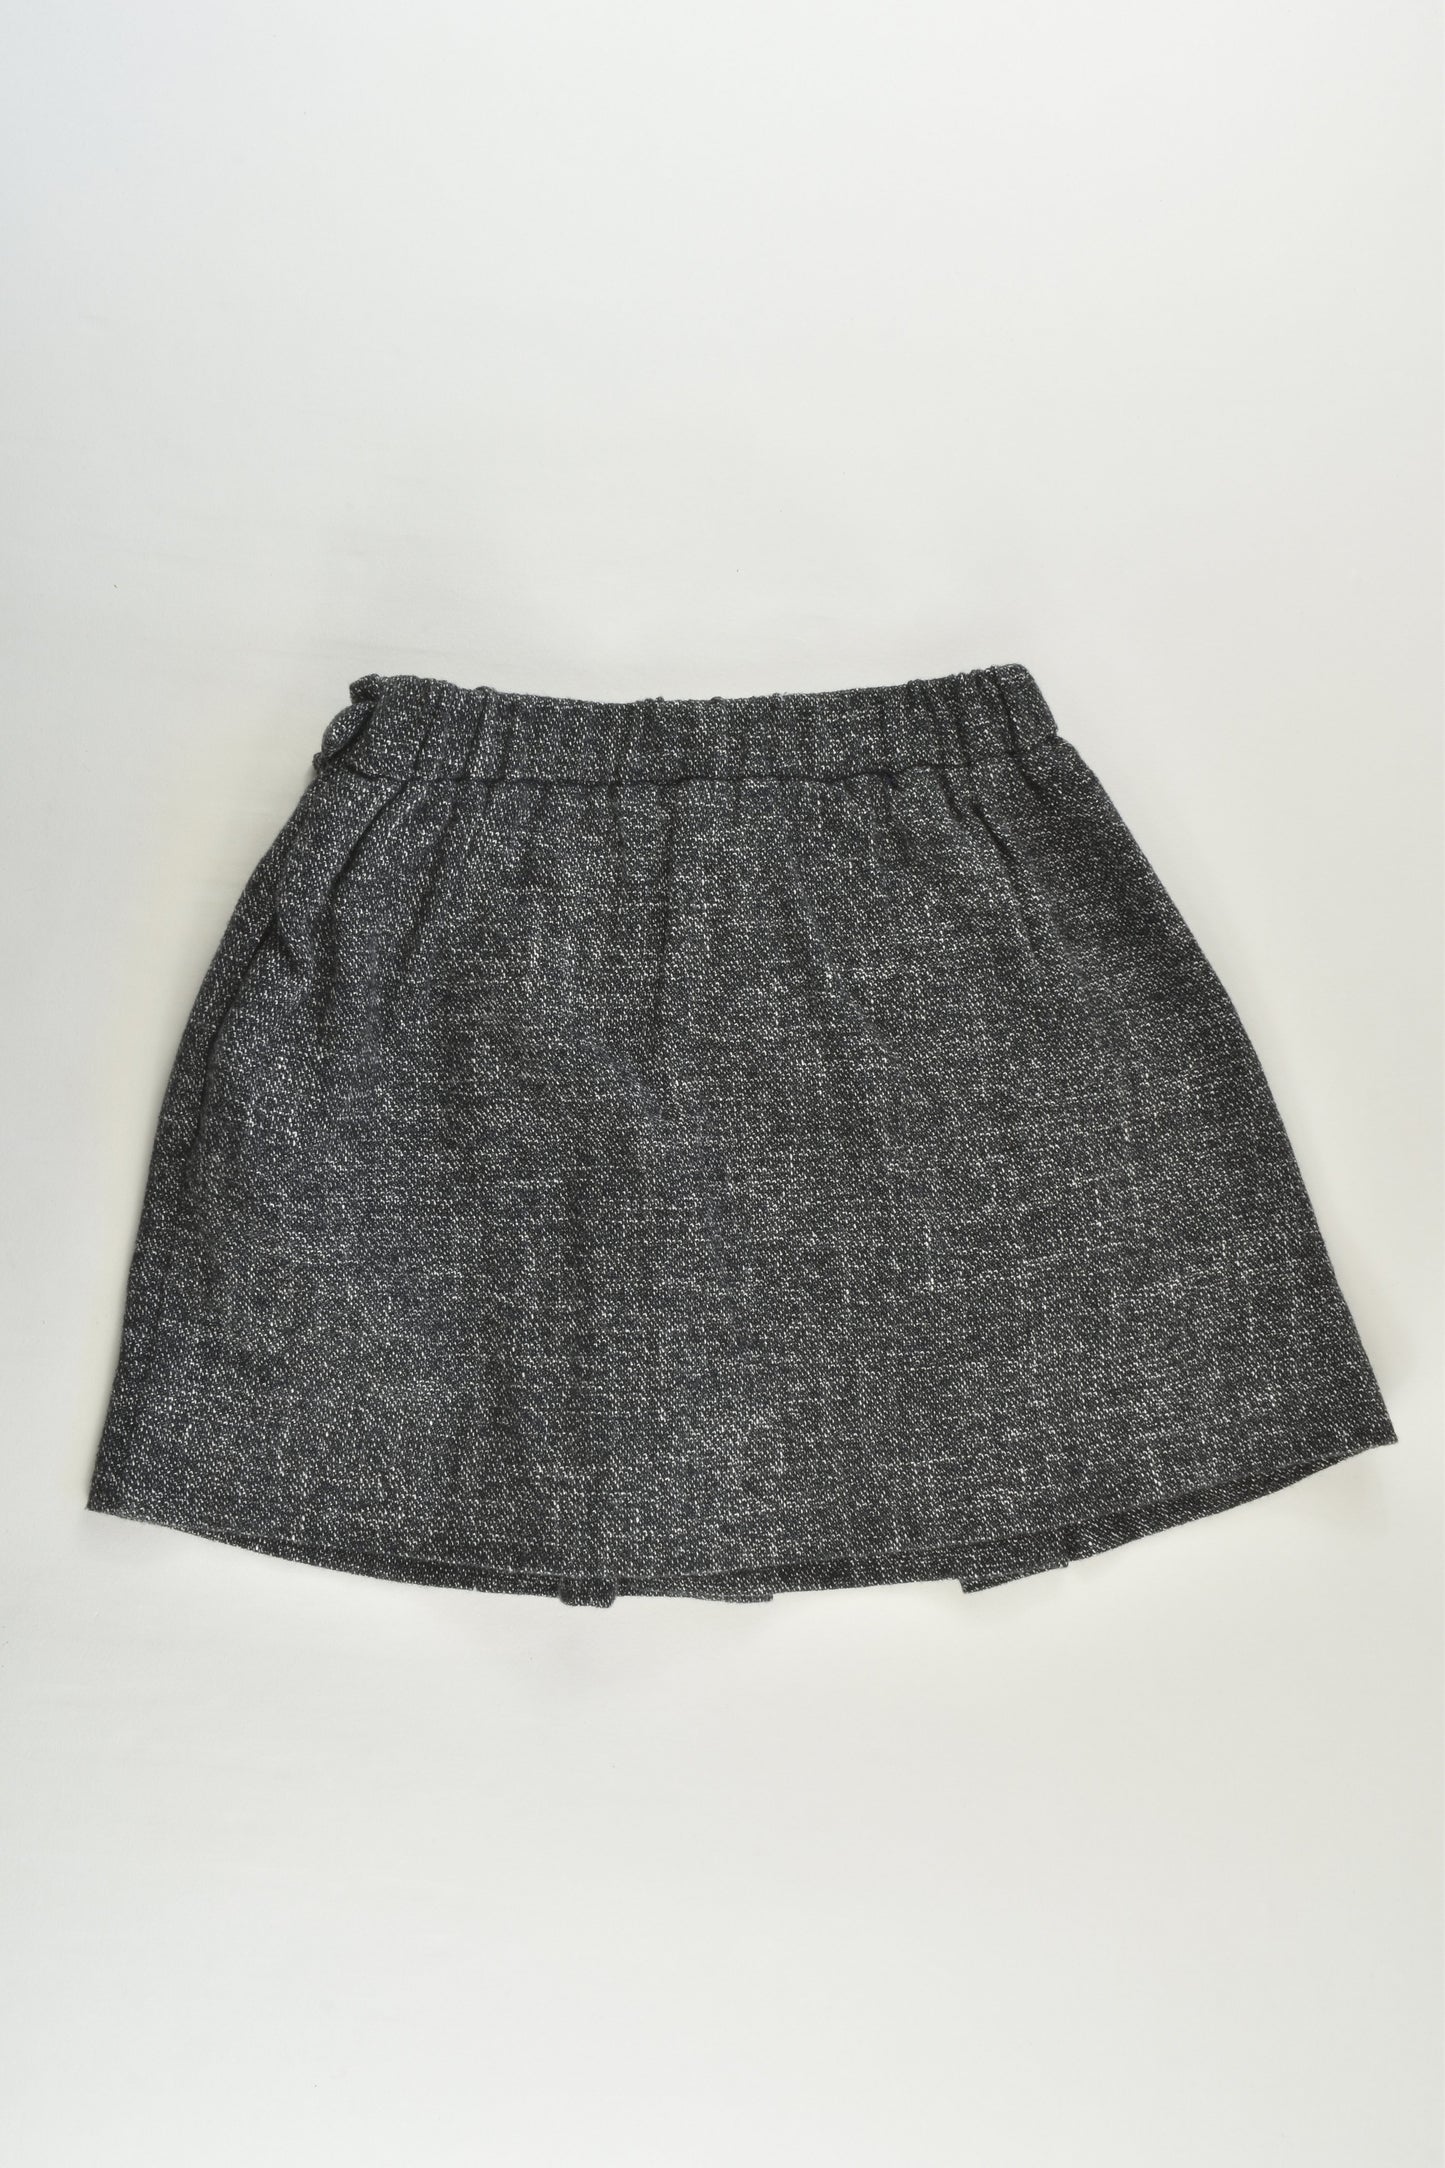 Zara Size 6 (116 cm) Winter Skirt